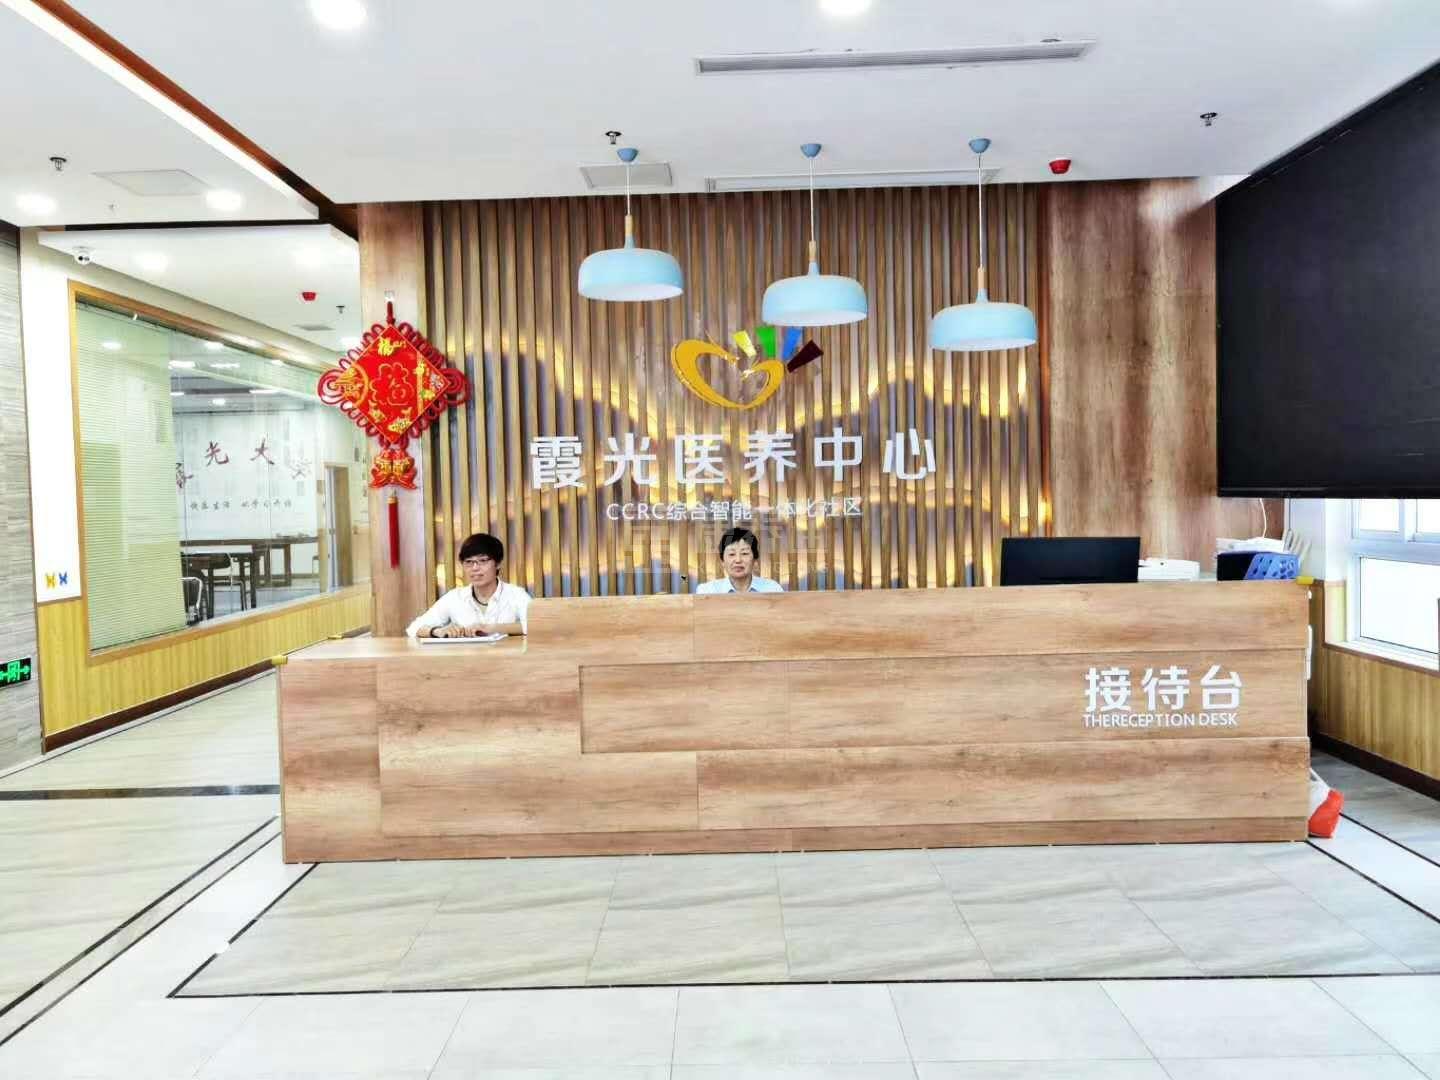 临泉县霞光居民服务管理有限公司环境图-餐台